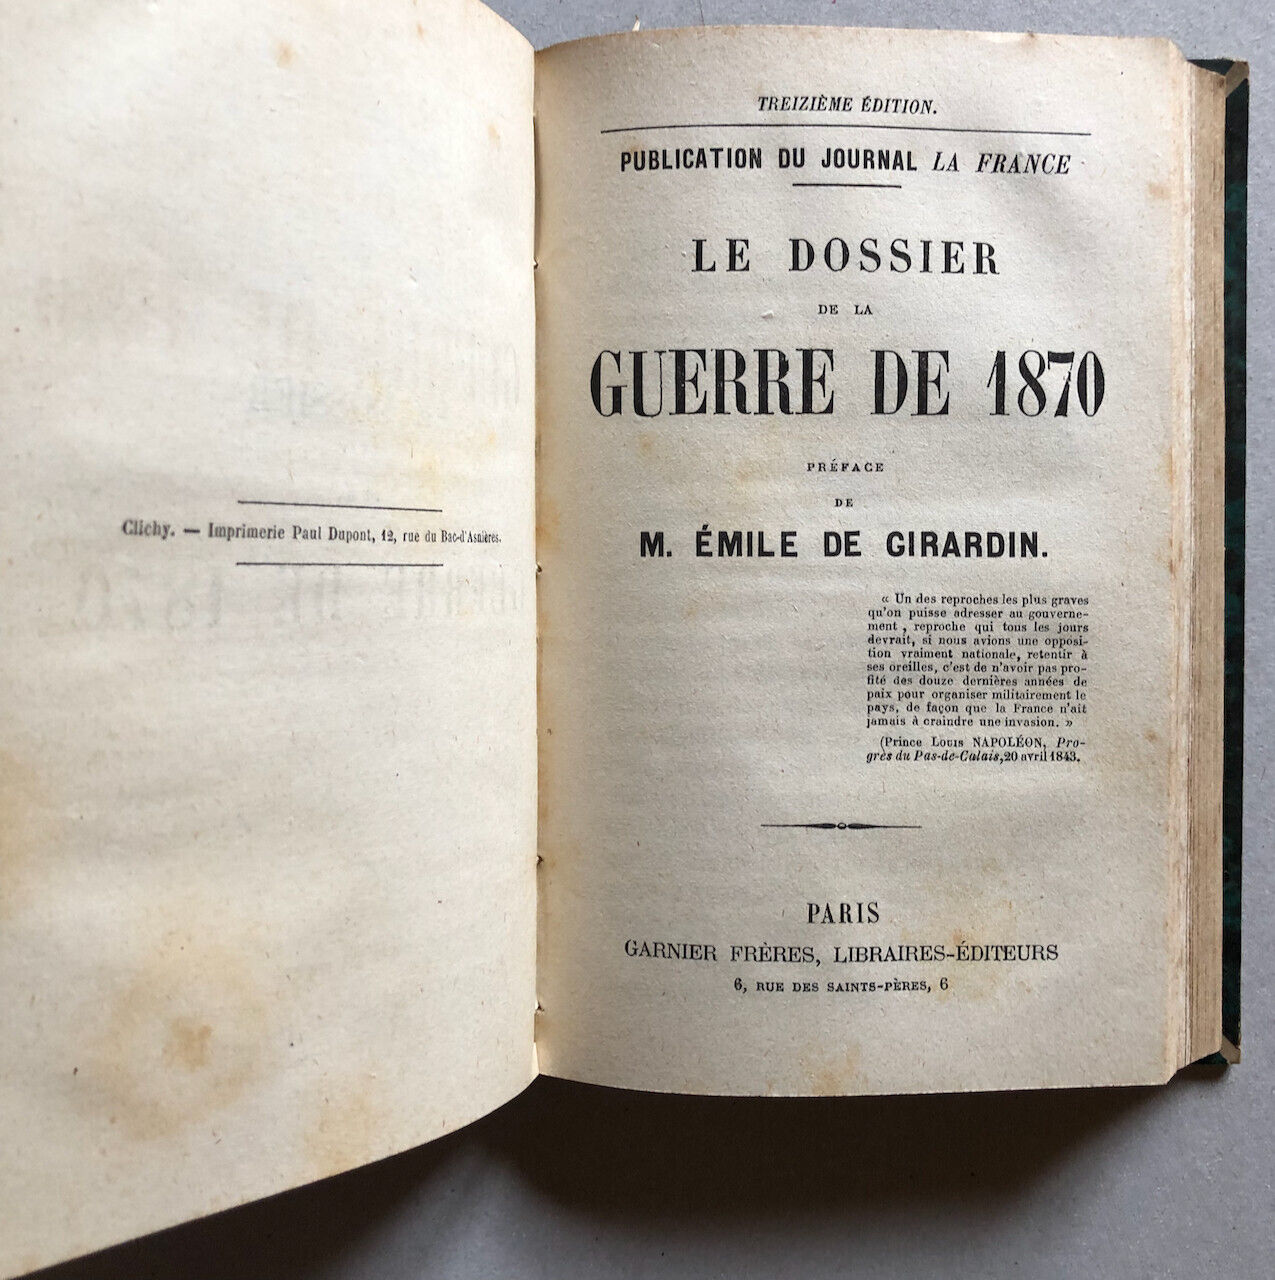 Proudhon — La Révolution sociale + Veuve d'un soldat +3 — é.o. — Garnier — 1852.